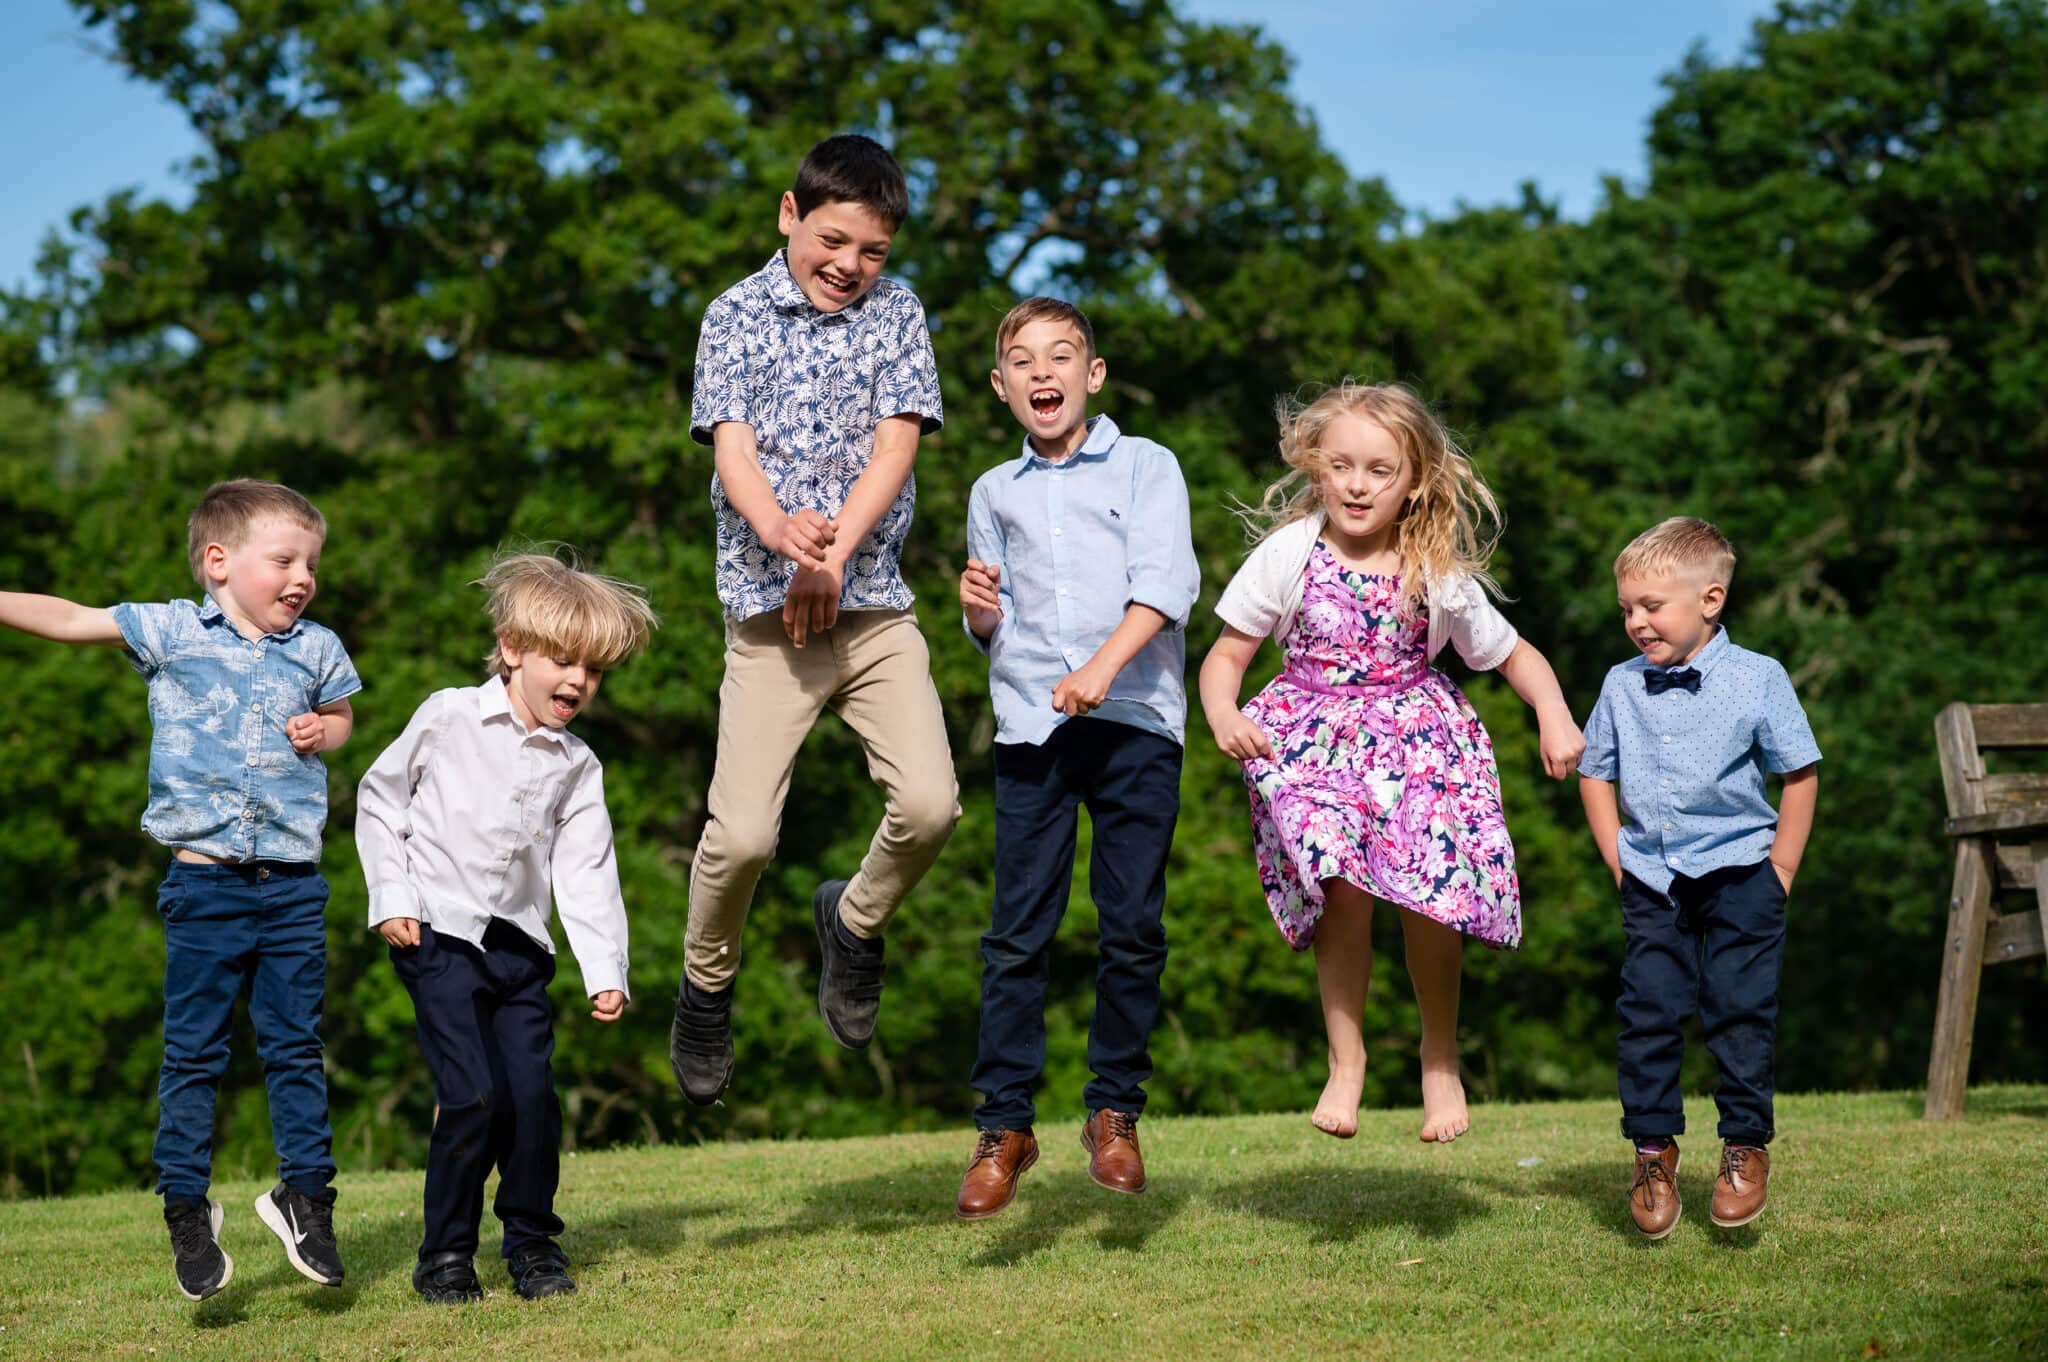 Wedding children jumping at Ashley Wood Farm wedding